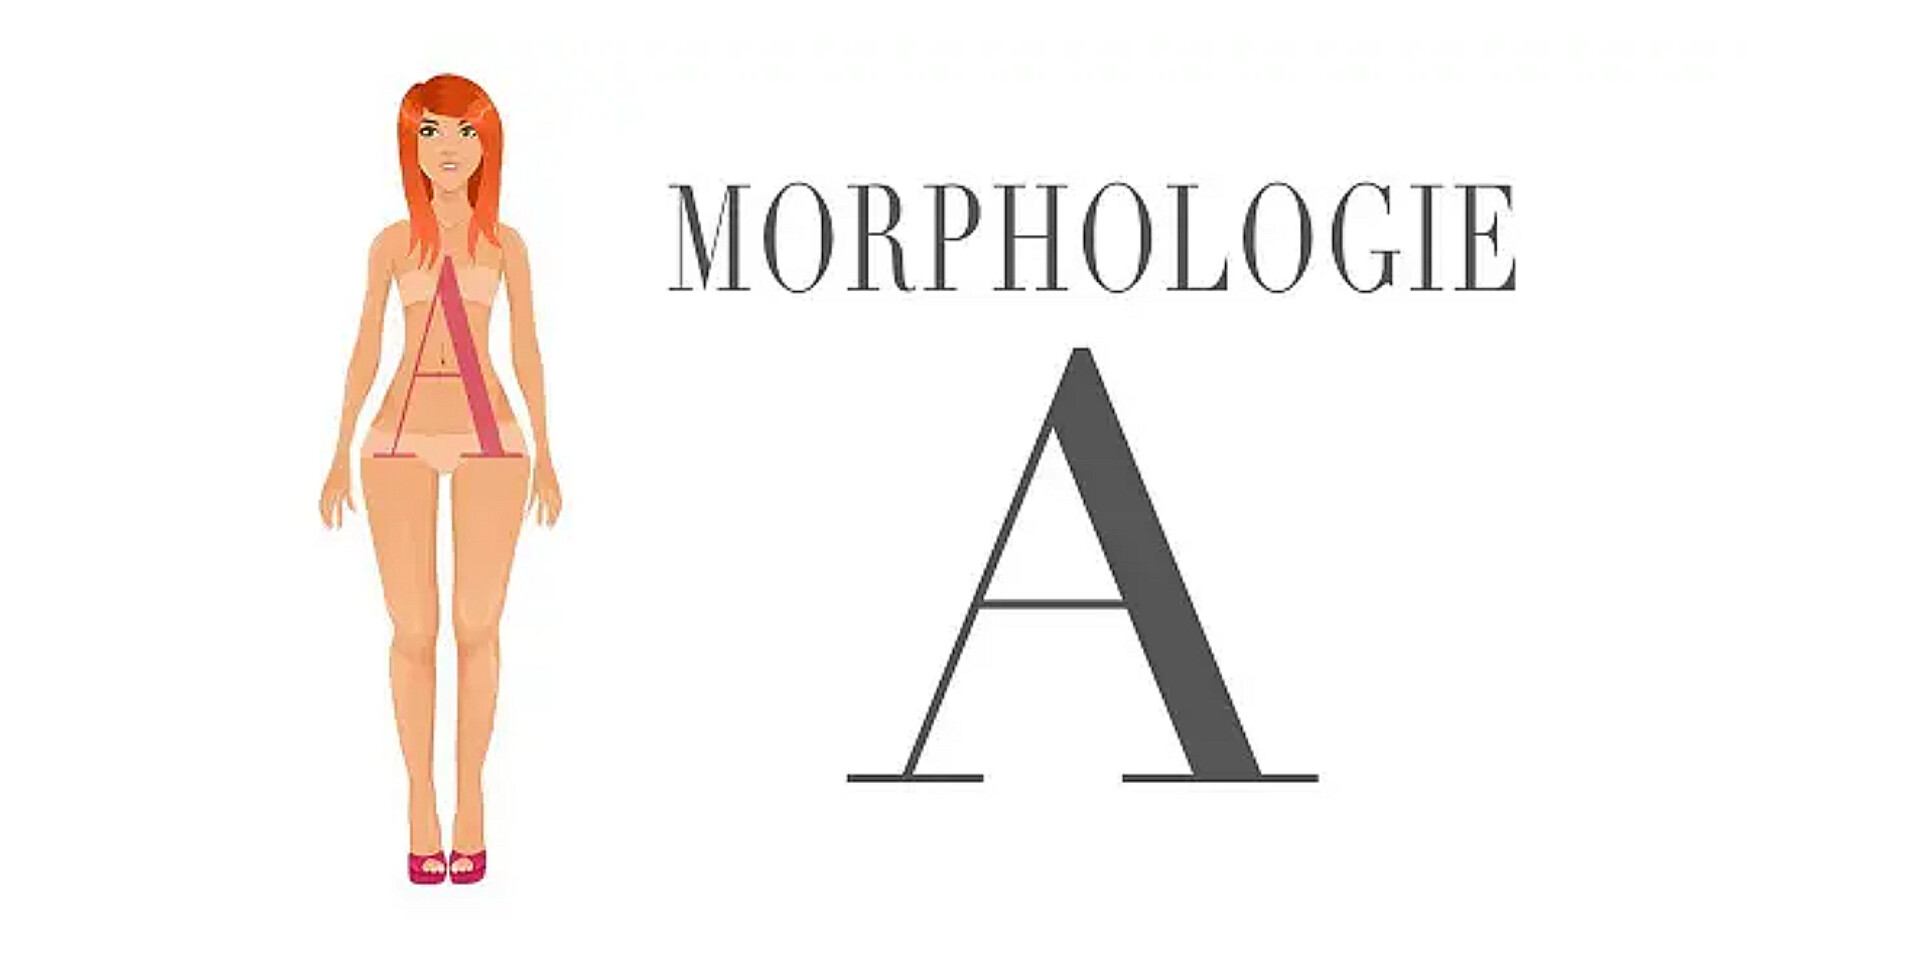 Morphologie A